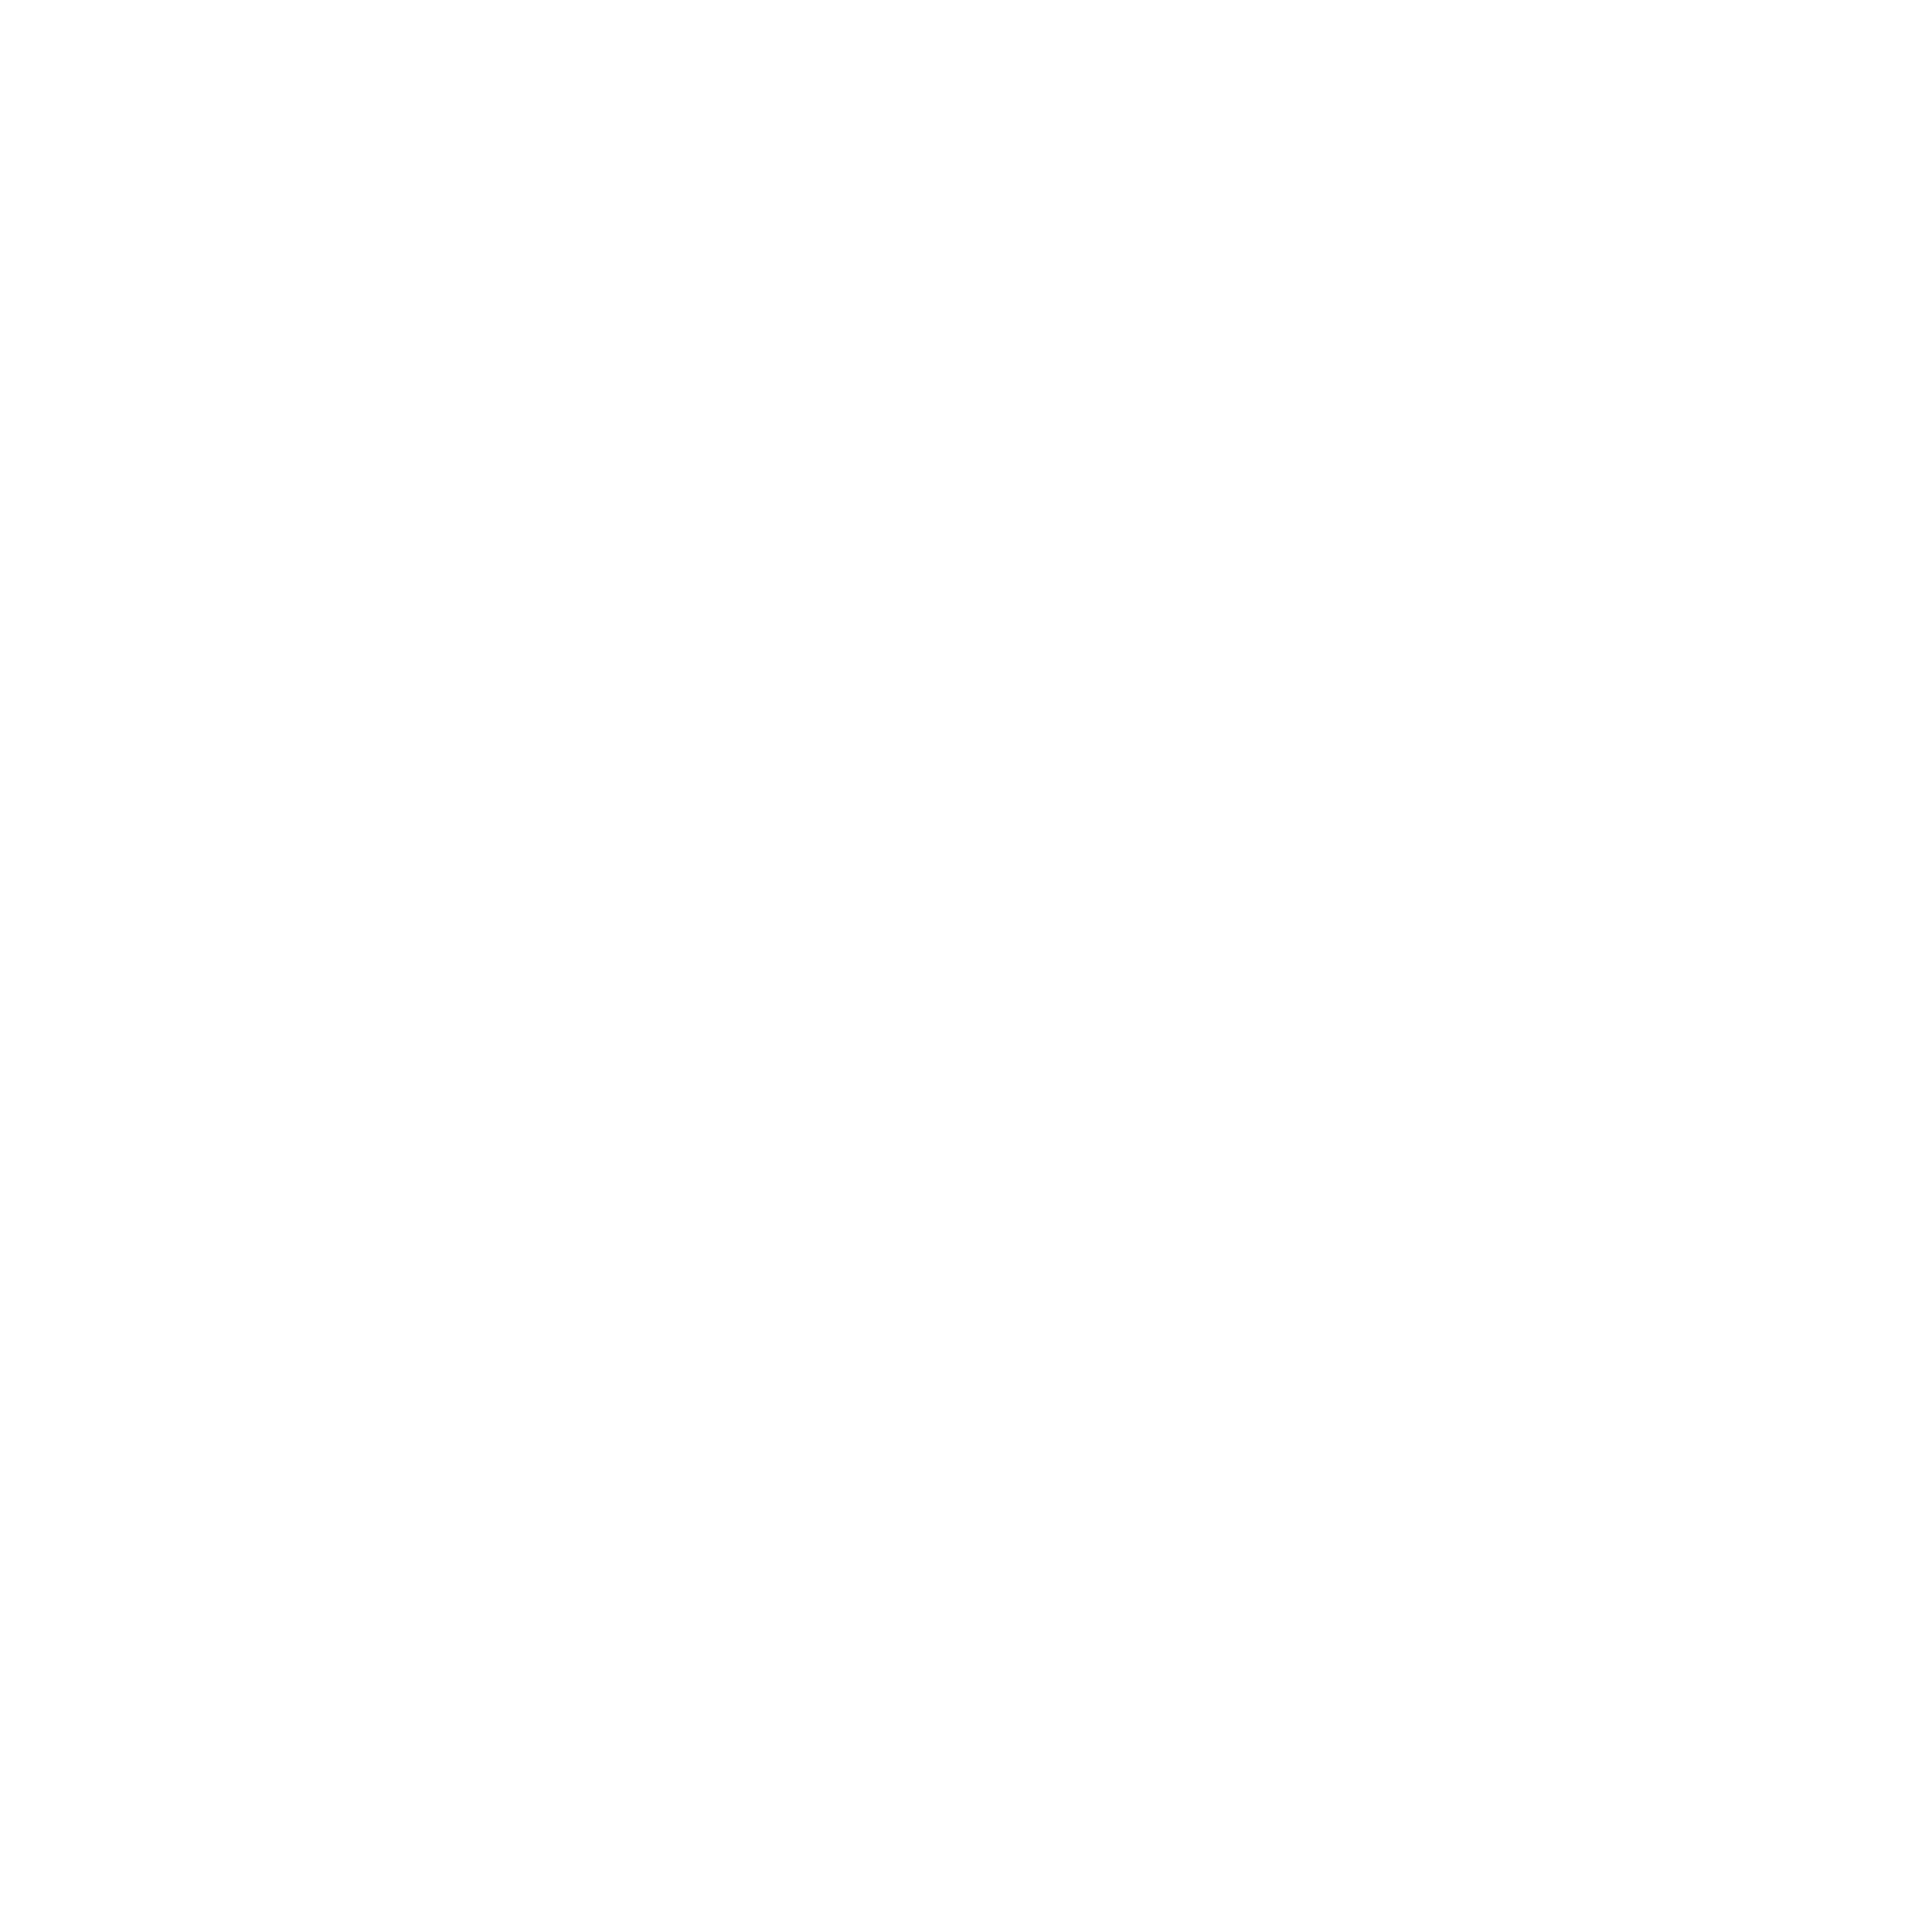 airblock